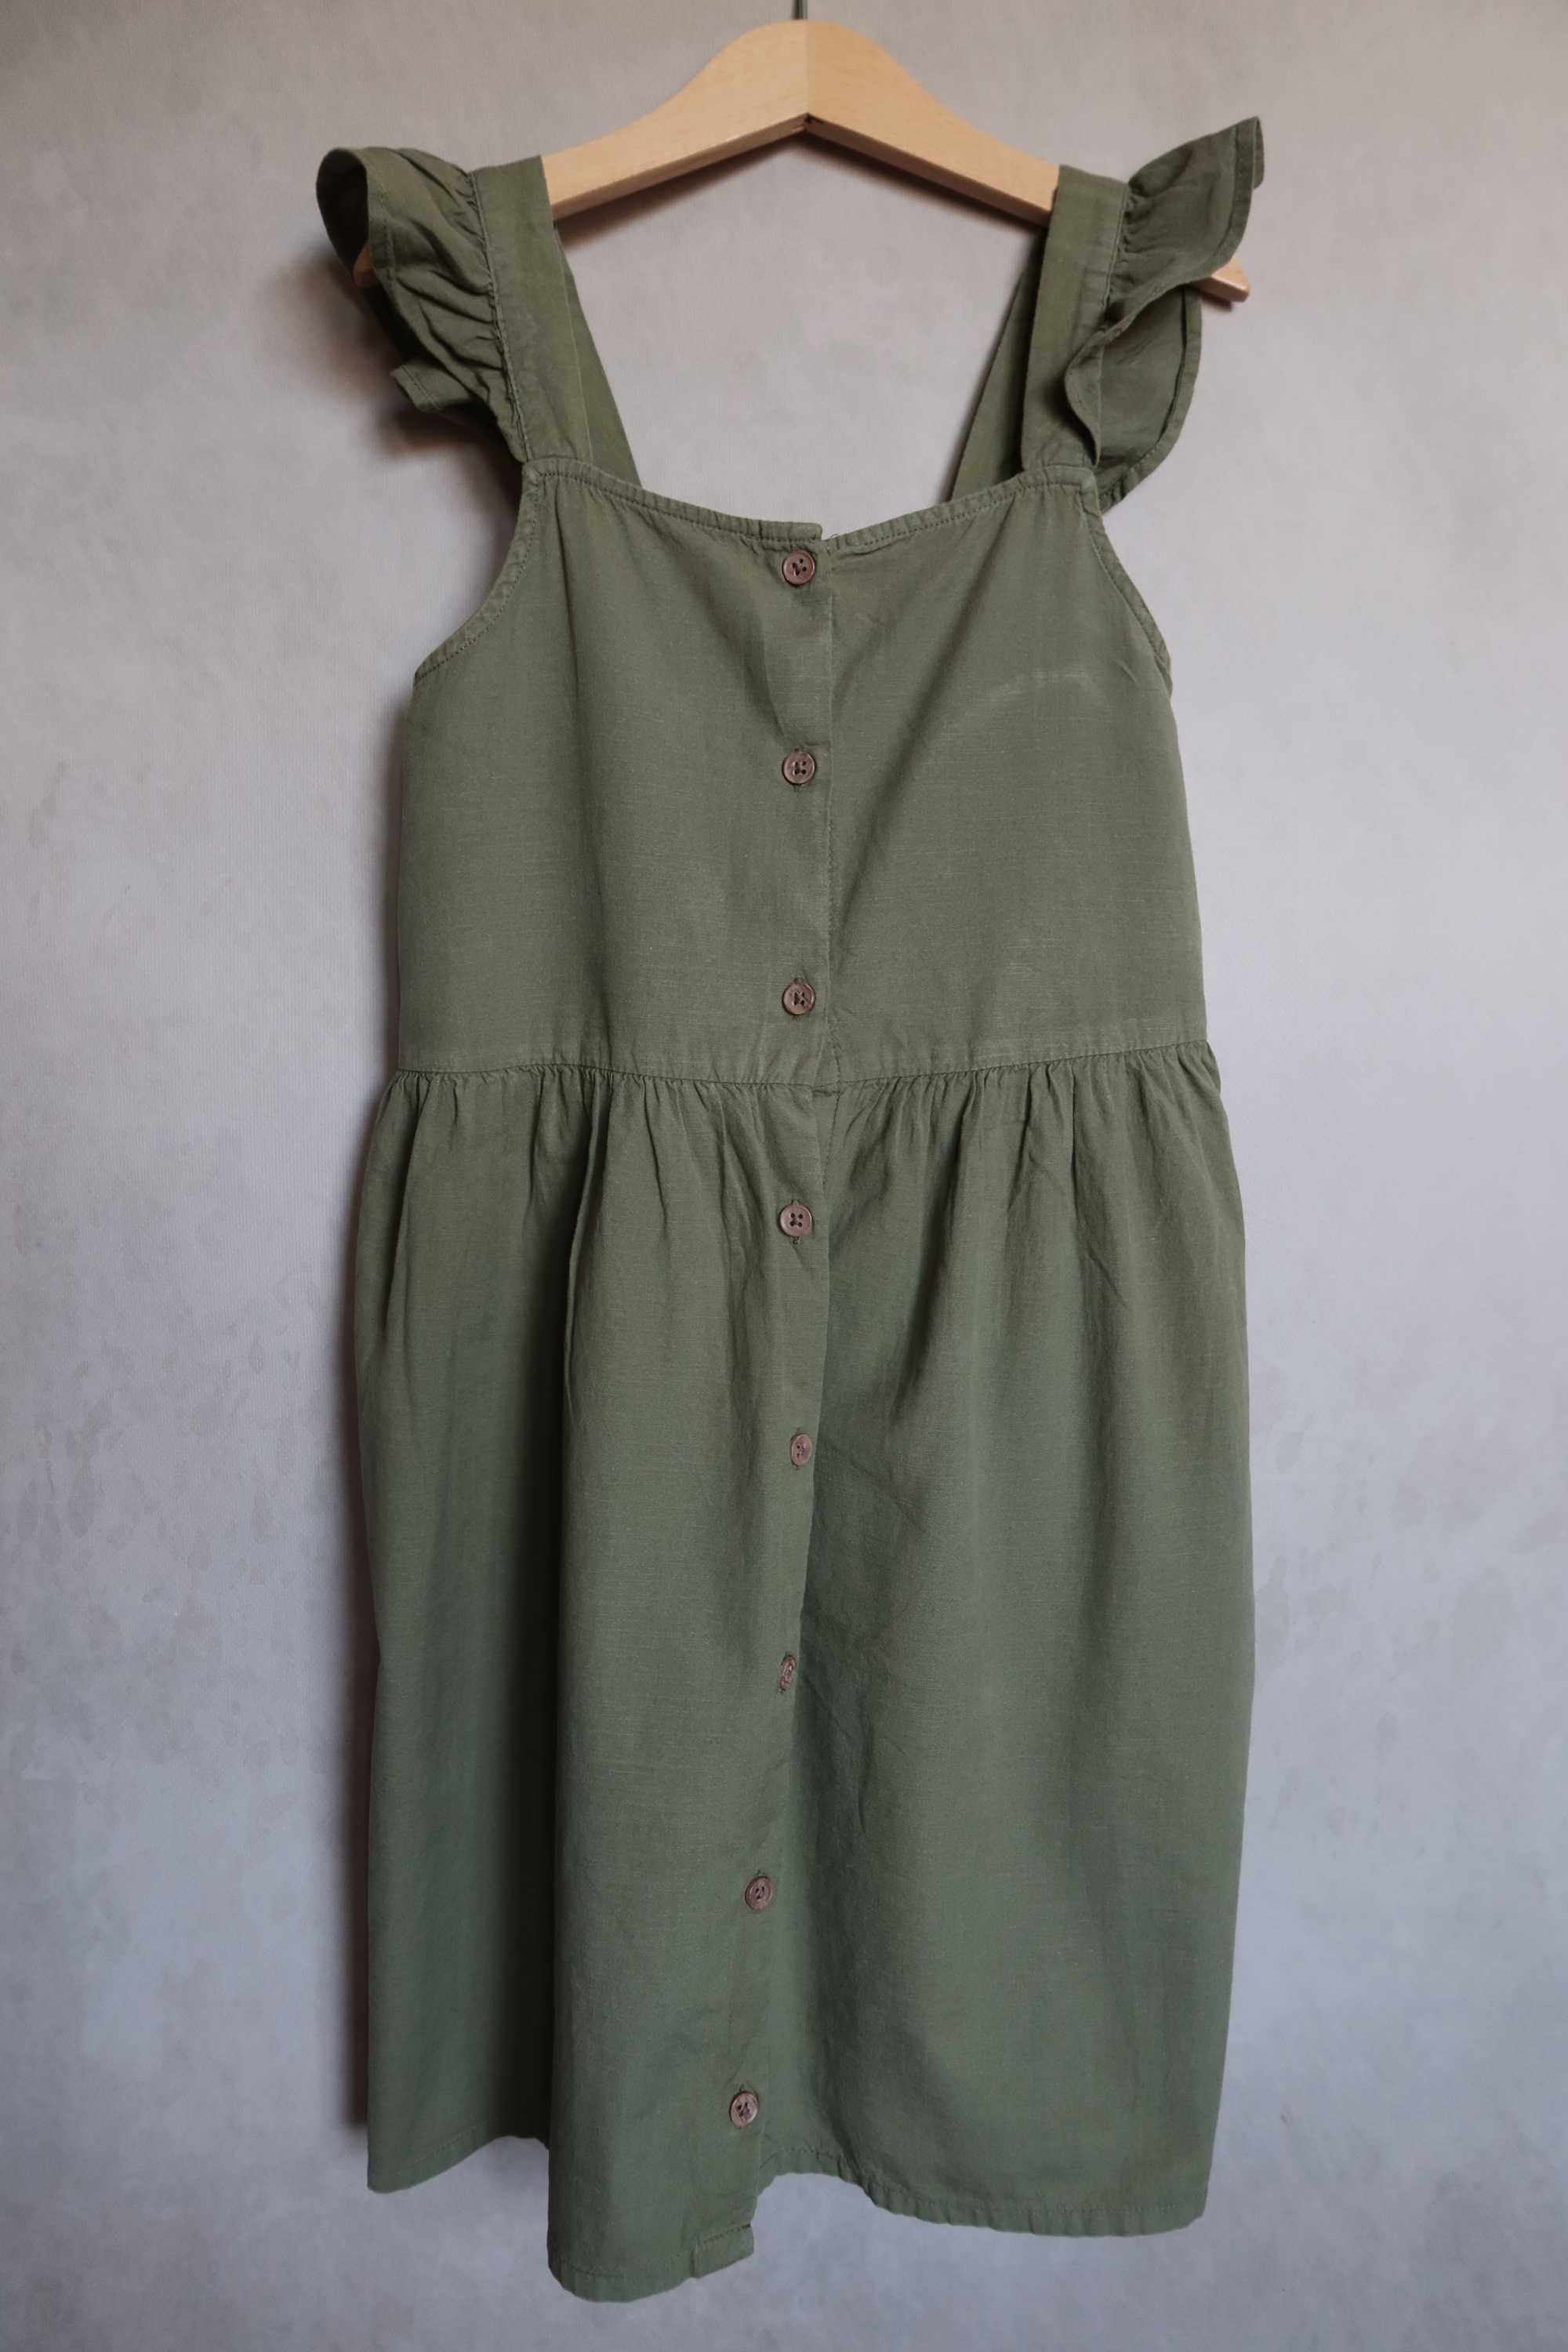 Sukienka HM 134 na ramiączkach letnia szelki khaki zielona poszukiwana